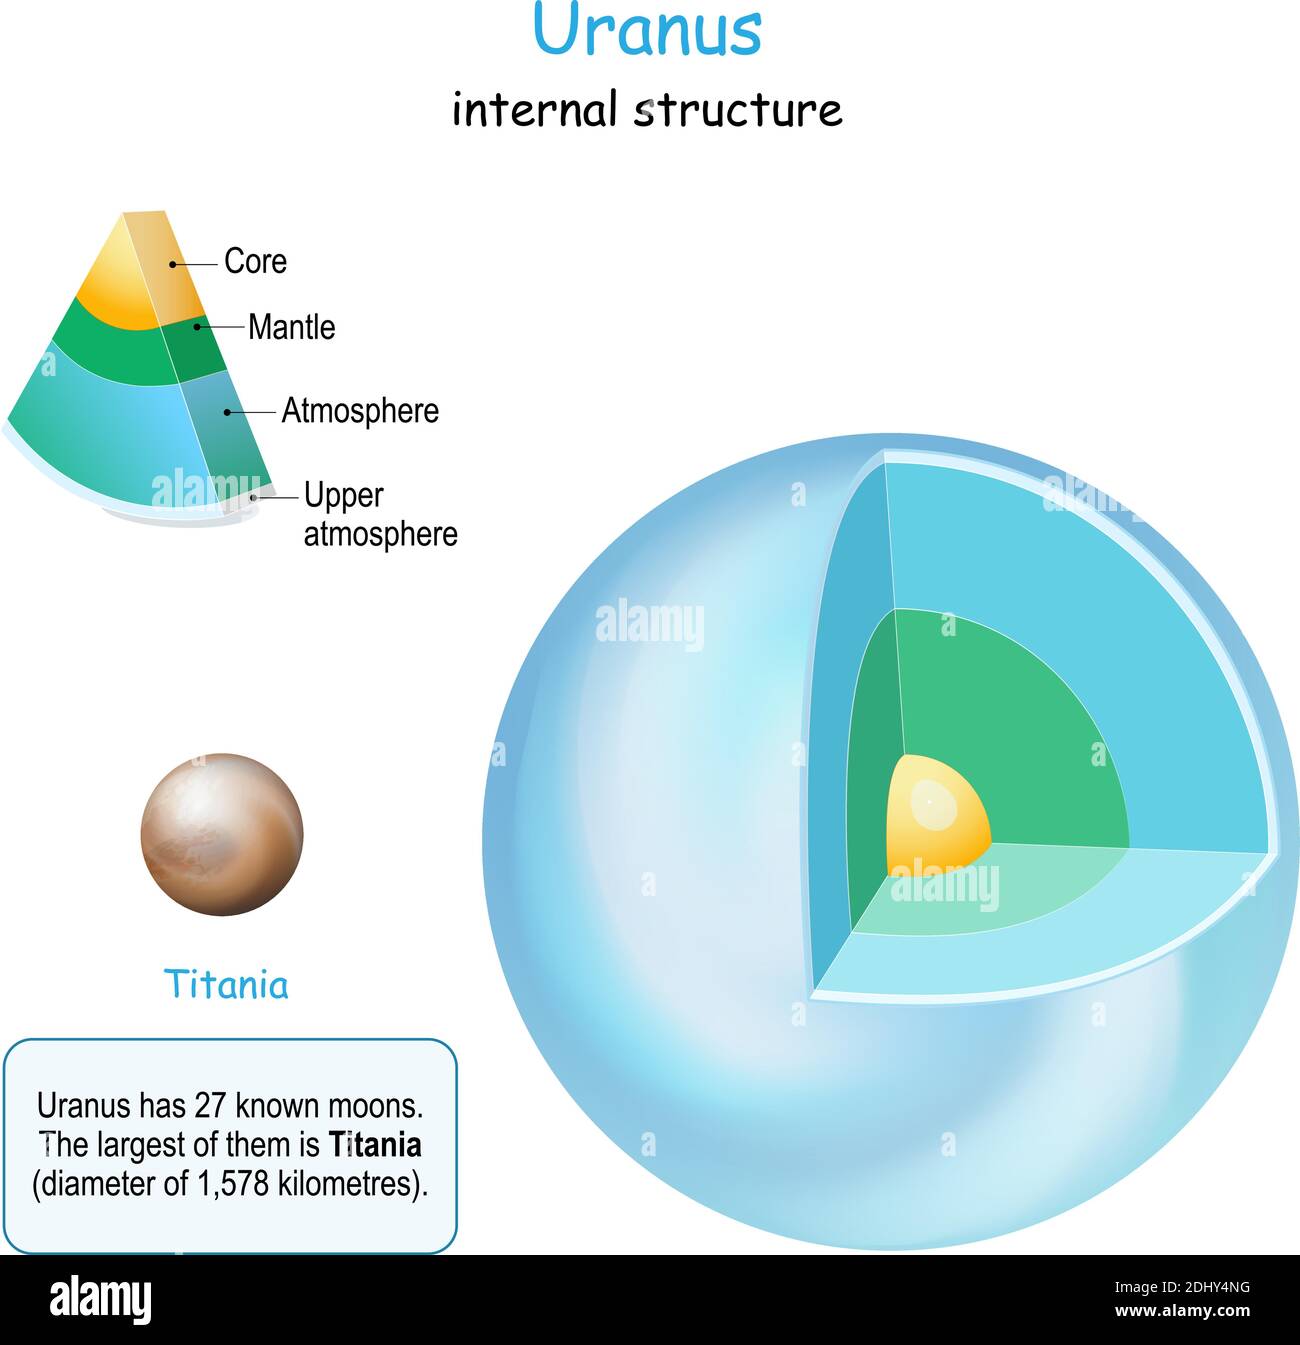 Structure interne d'Uranus. Section transversale de la planète du noyau au manteau et à la croûte. Titania est la Lune d'Uranus. Système solaire. Infographiques. Vecteur Image Vectorielle Stock - Alamy